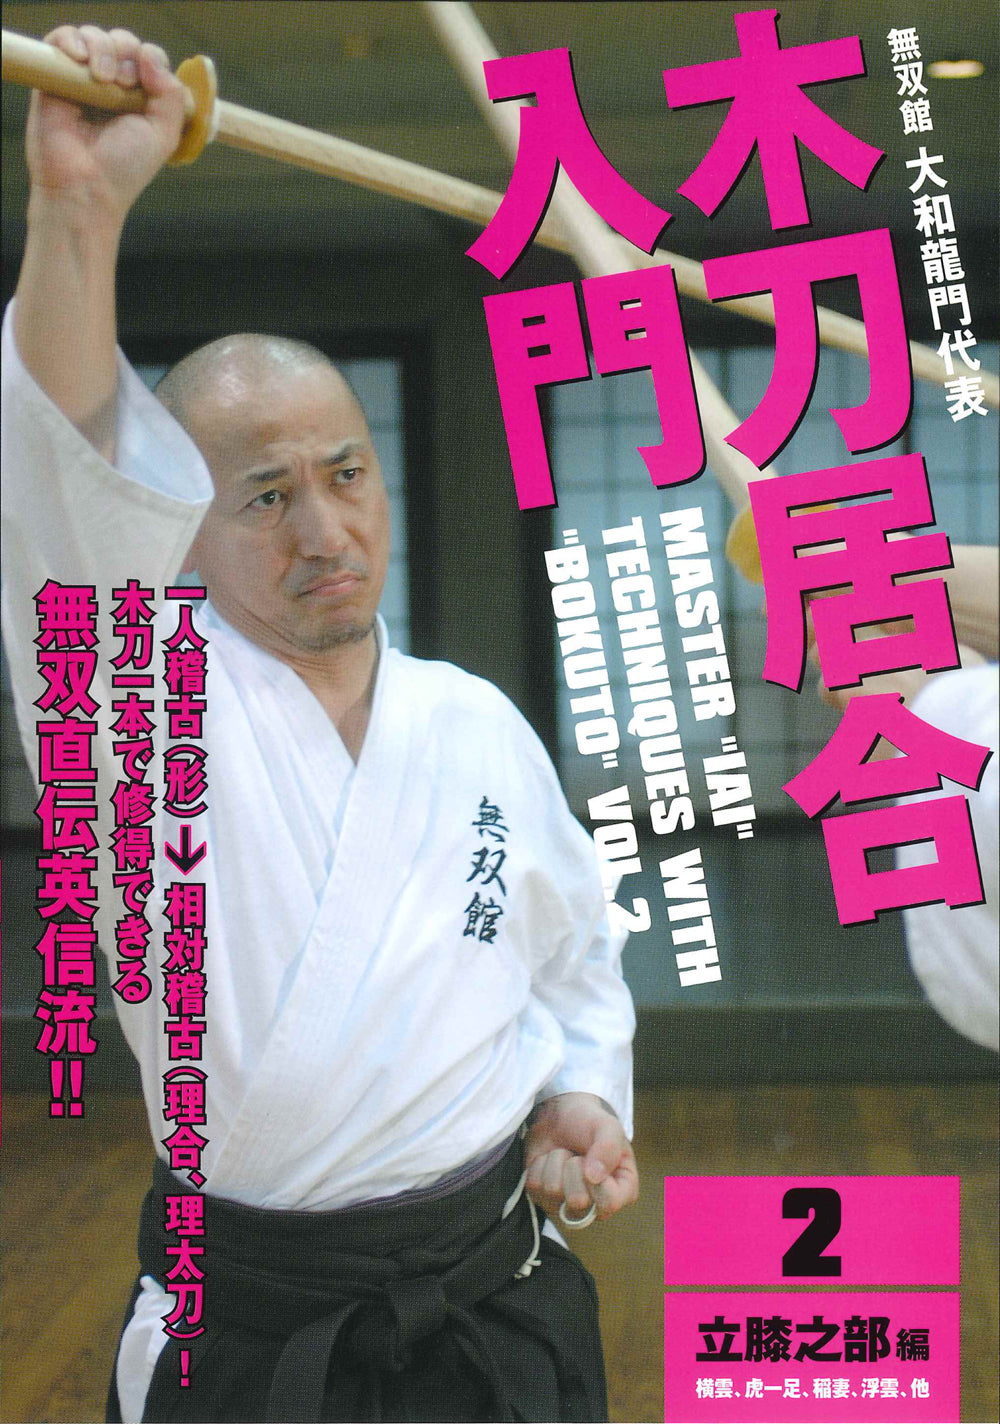 Master Iai Techniques con Bokuto Vol 2 DVD de Ryumon Yamato